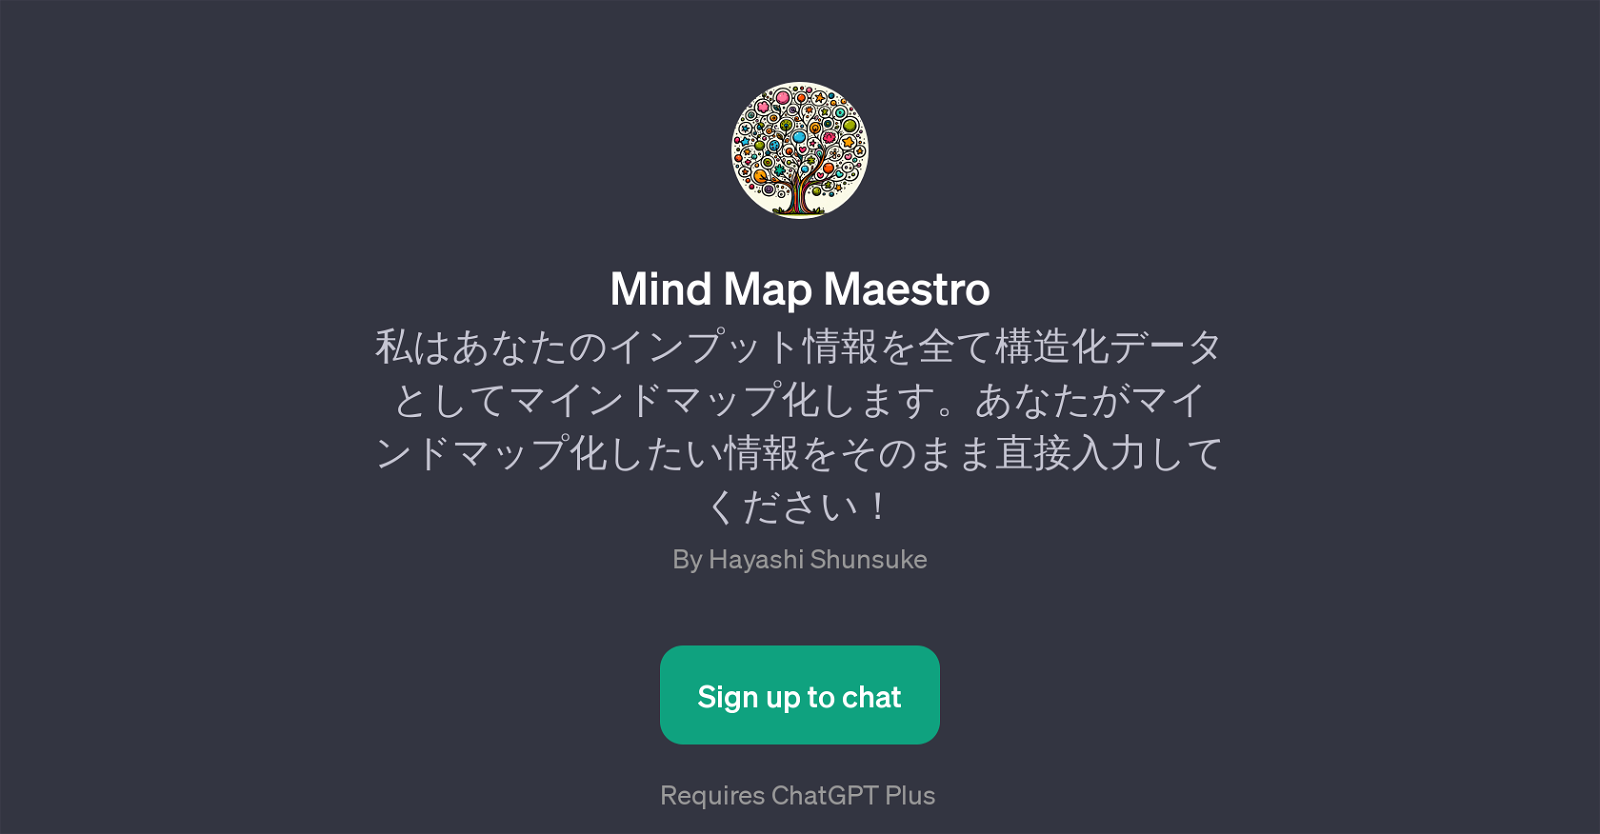 Mind Map Maestro website